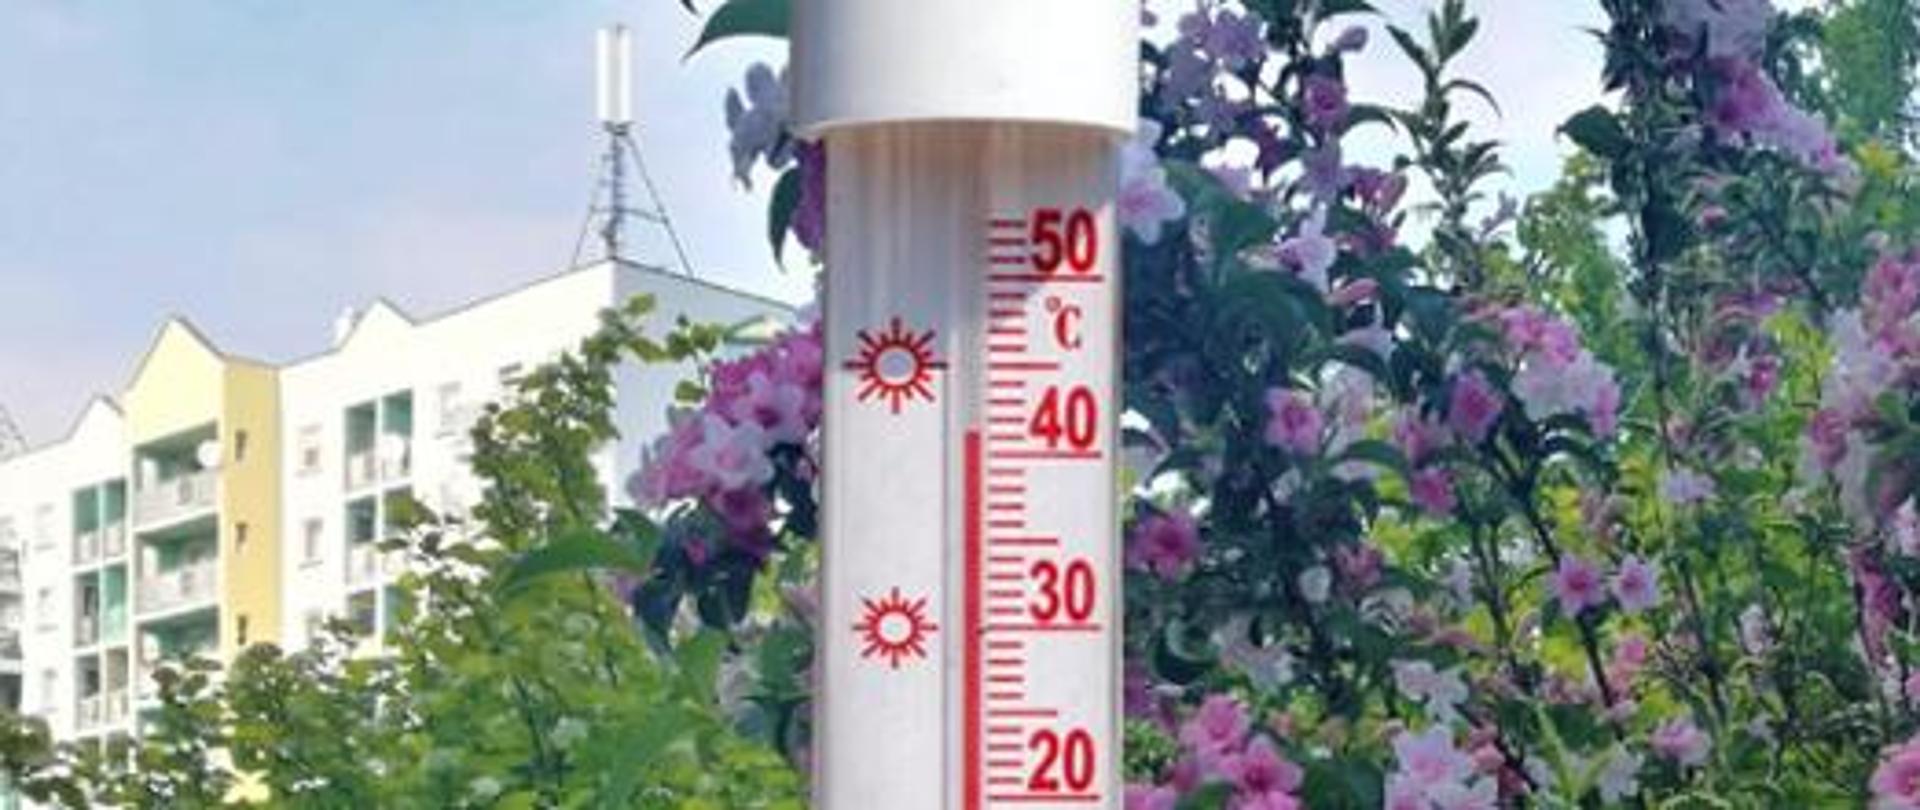 Zdjęcie nawiązuje do artykułu dotyczącego bezpiecznych zachowań podczas upałów. Na pierwszym planie widać skalę termometru, która wskazuje 40 stopni celcjusza. Tło uzupełniają kwiaty fioletowo białe nawiązujące do pory letniej. 